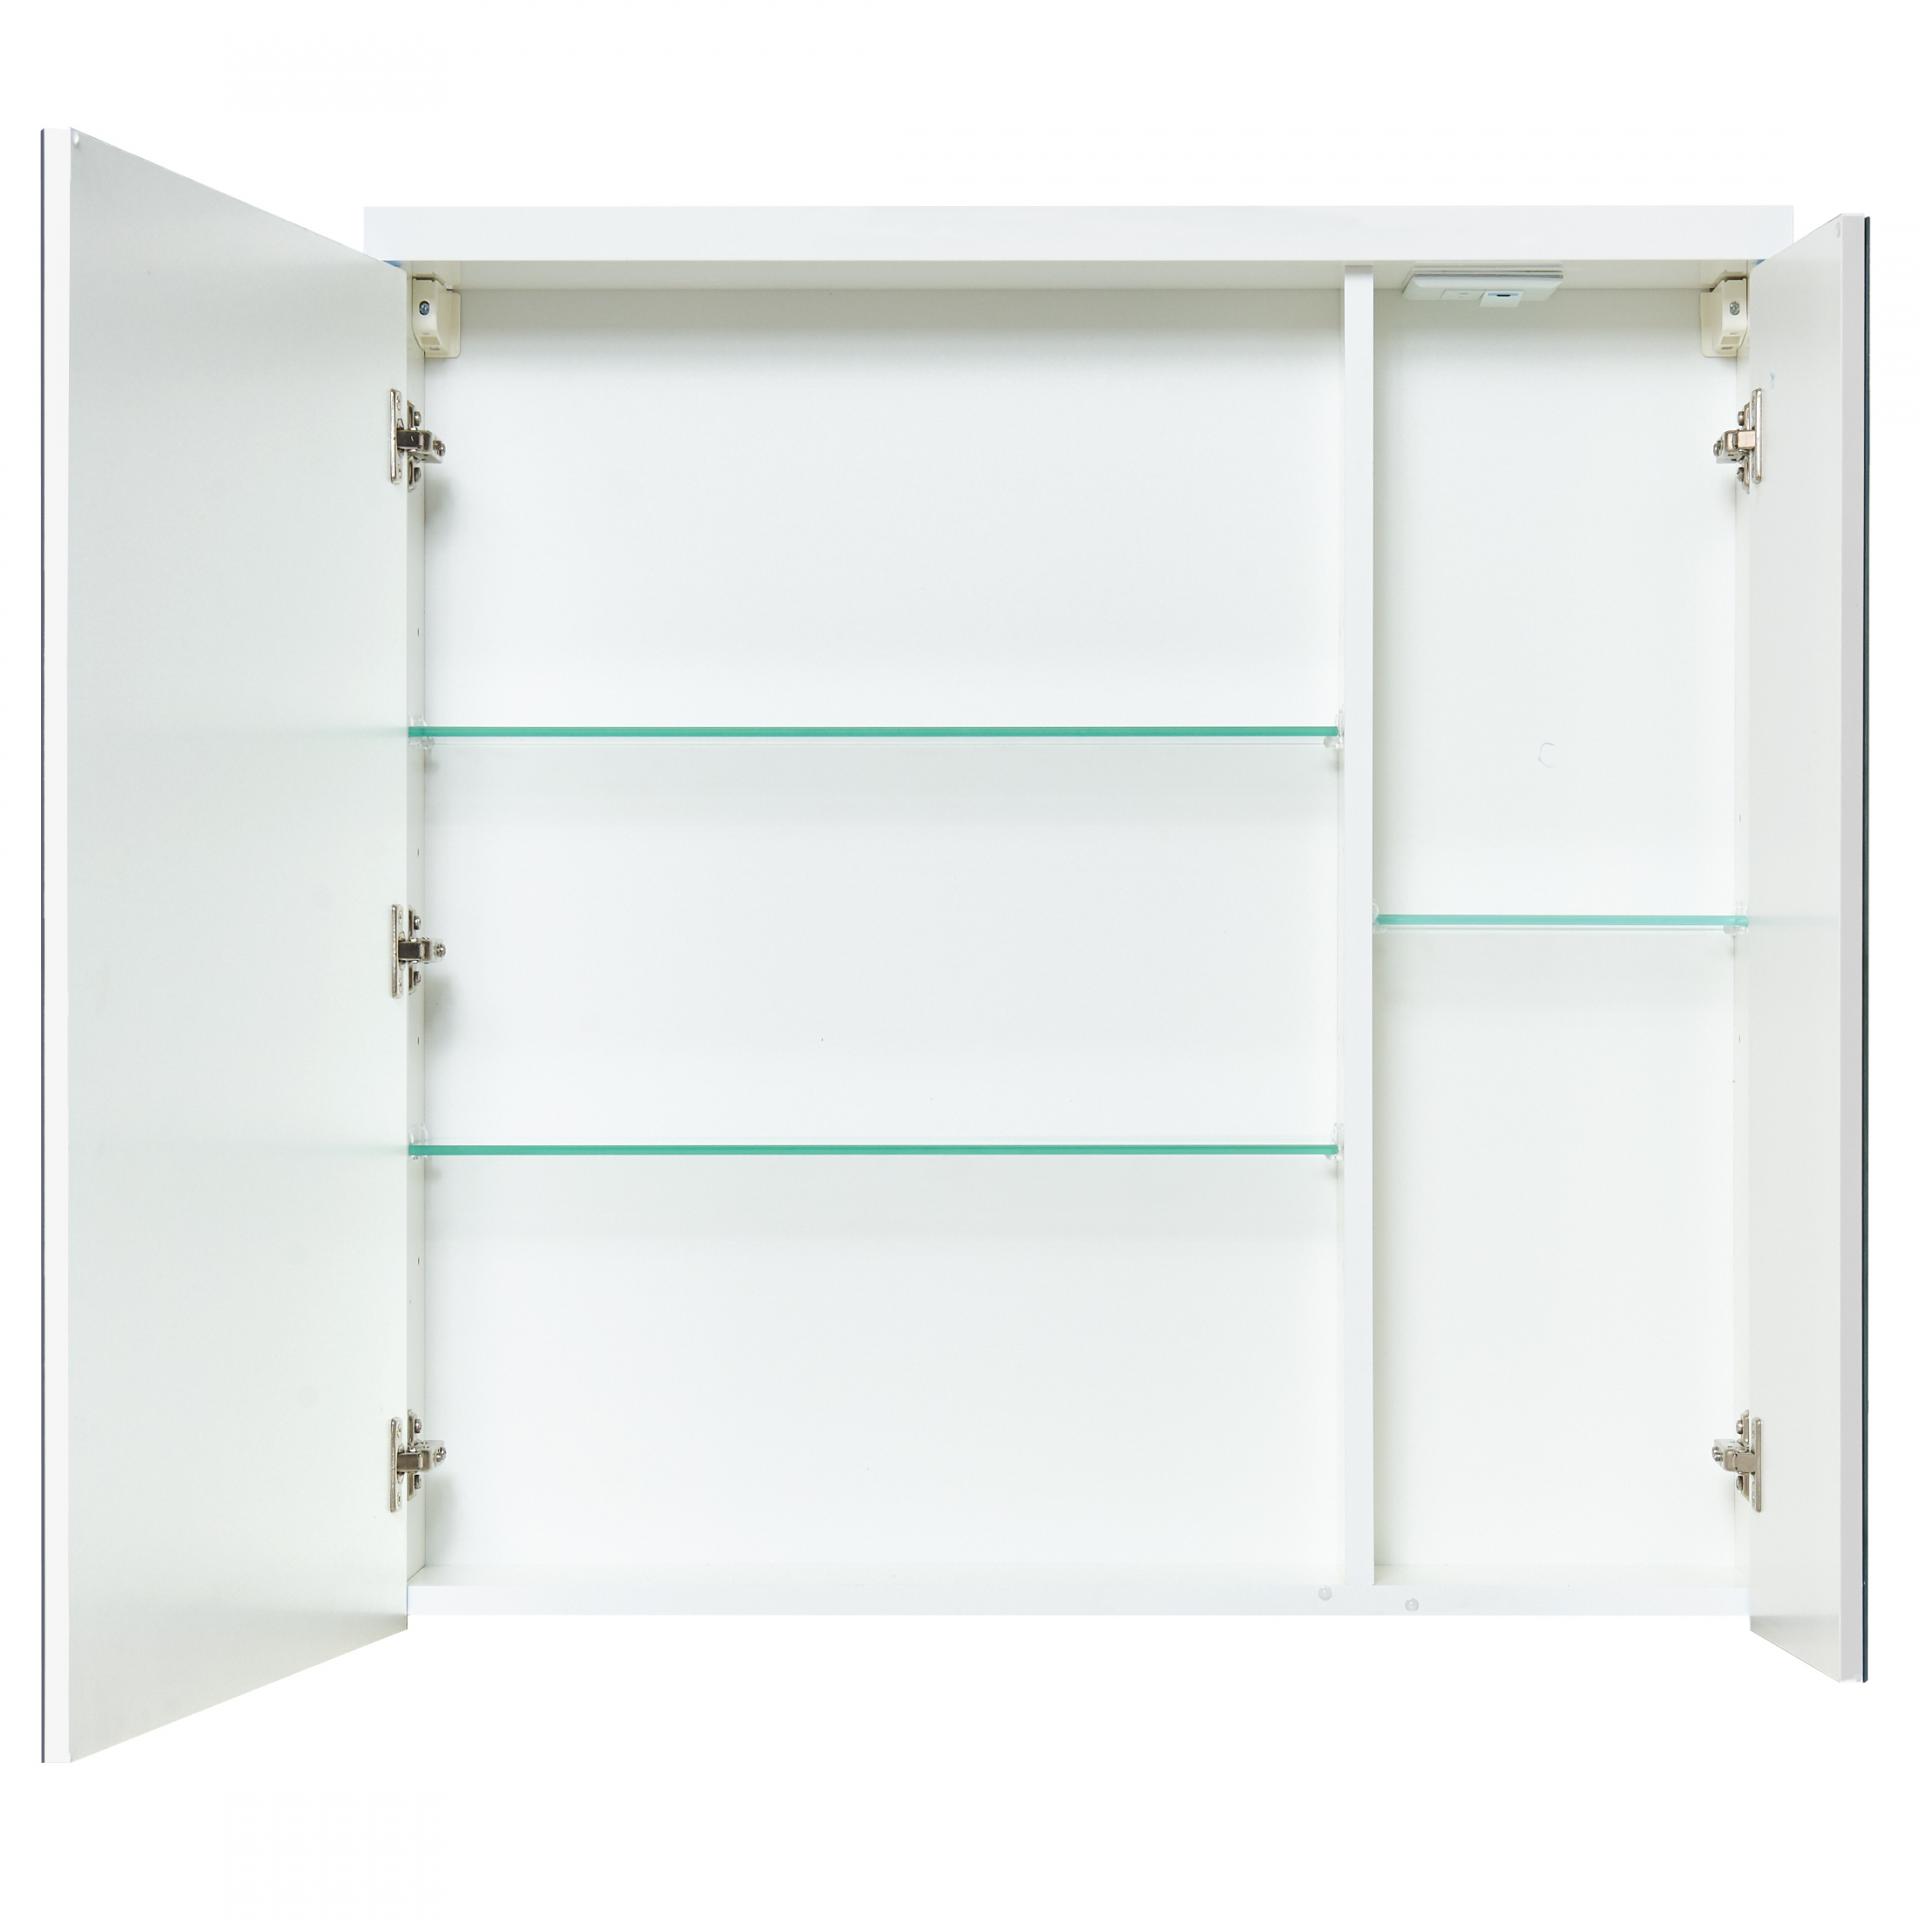 Зеркальный шкаф 80 см Акватон Брук 1A200602BC010 белый